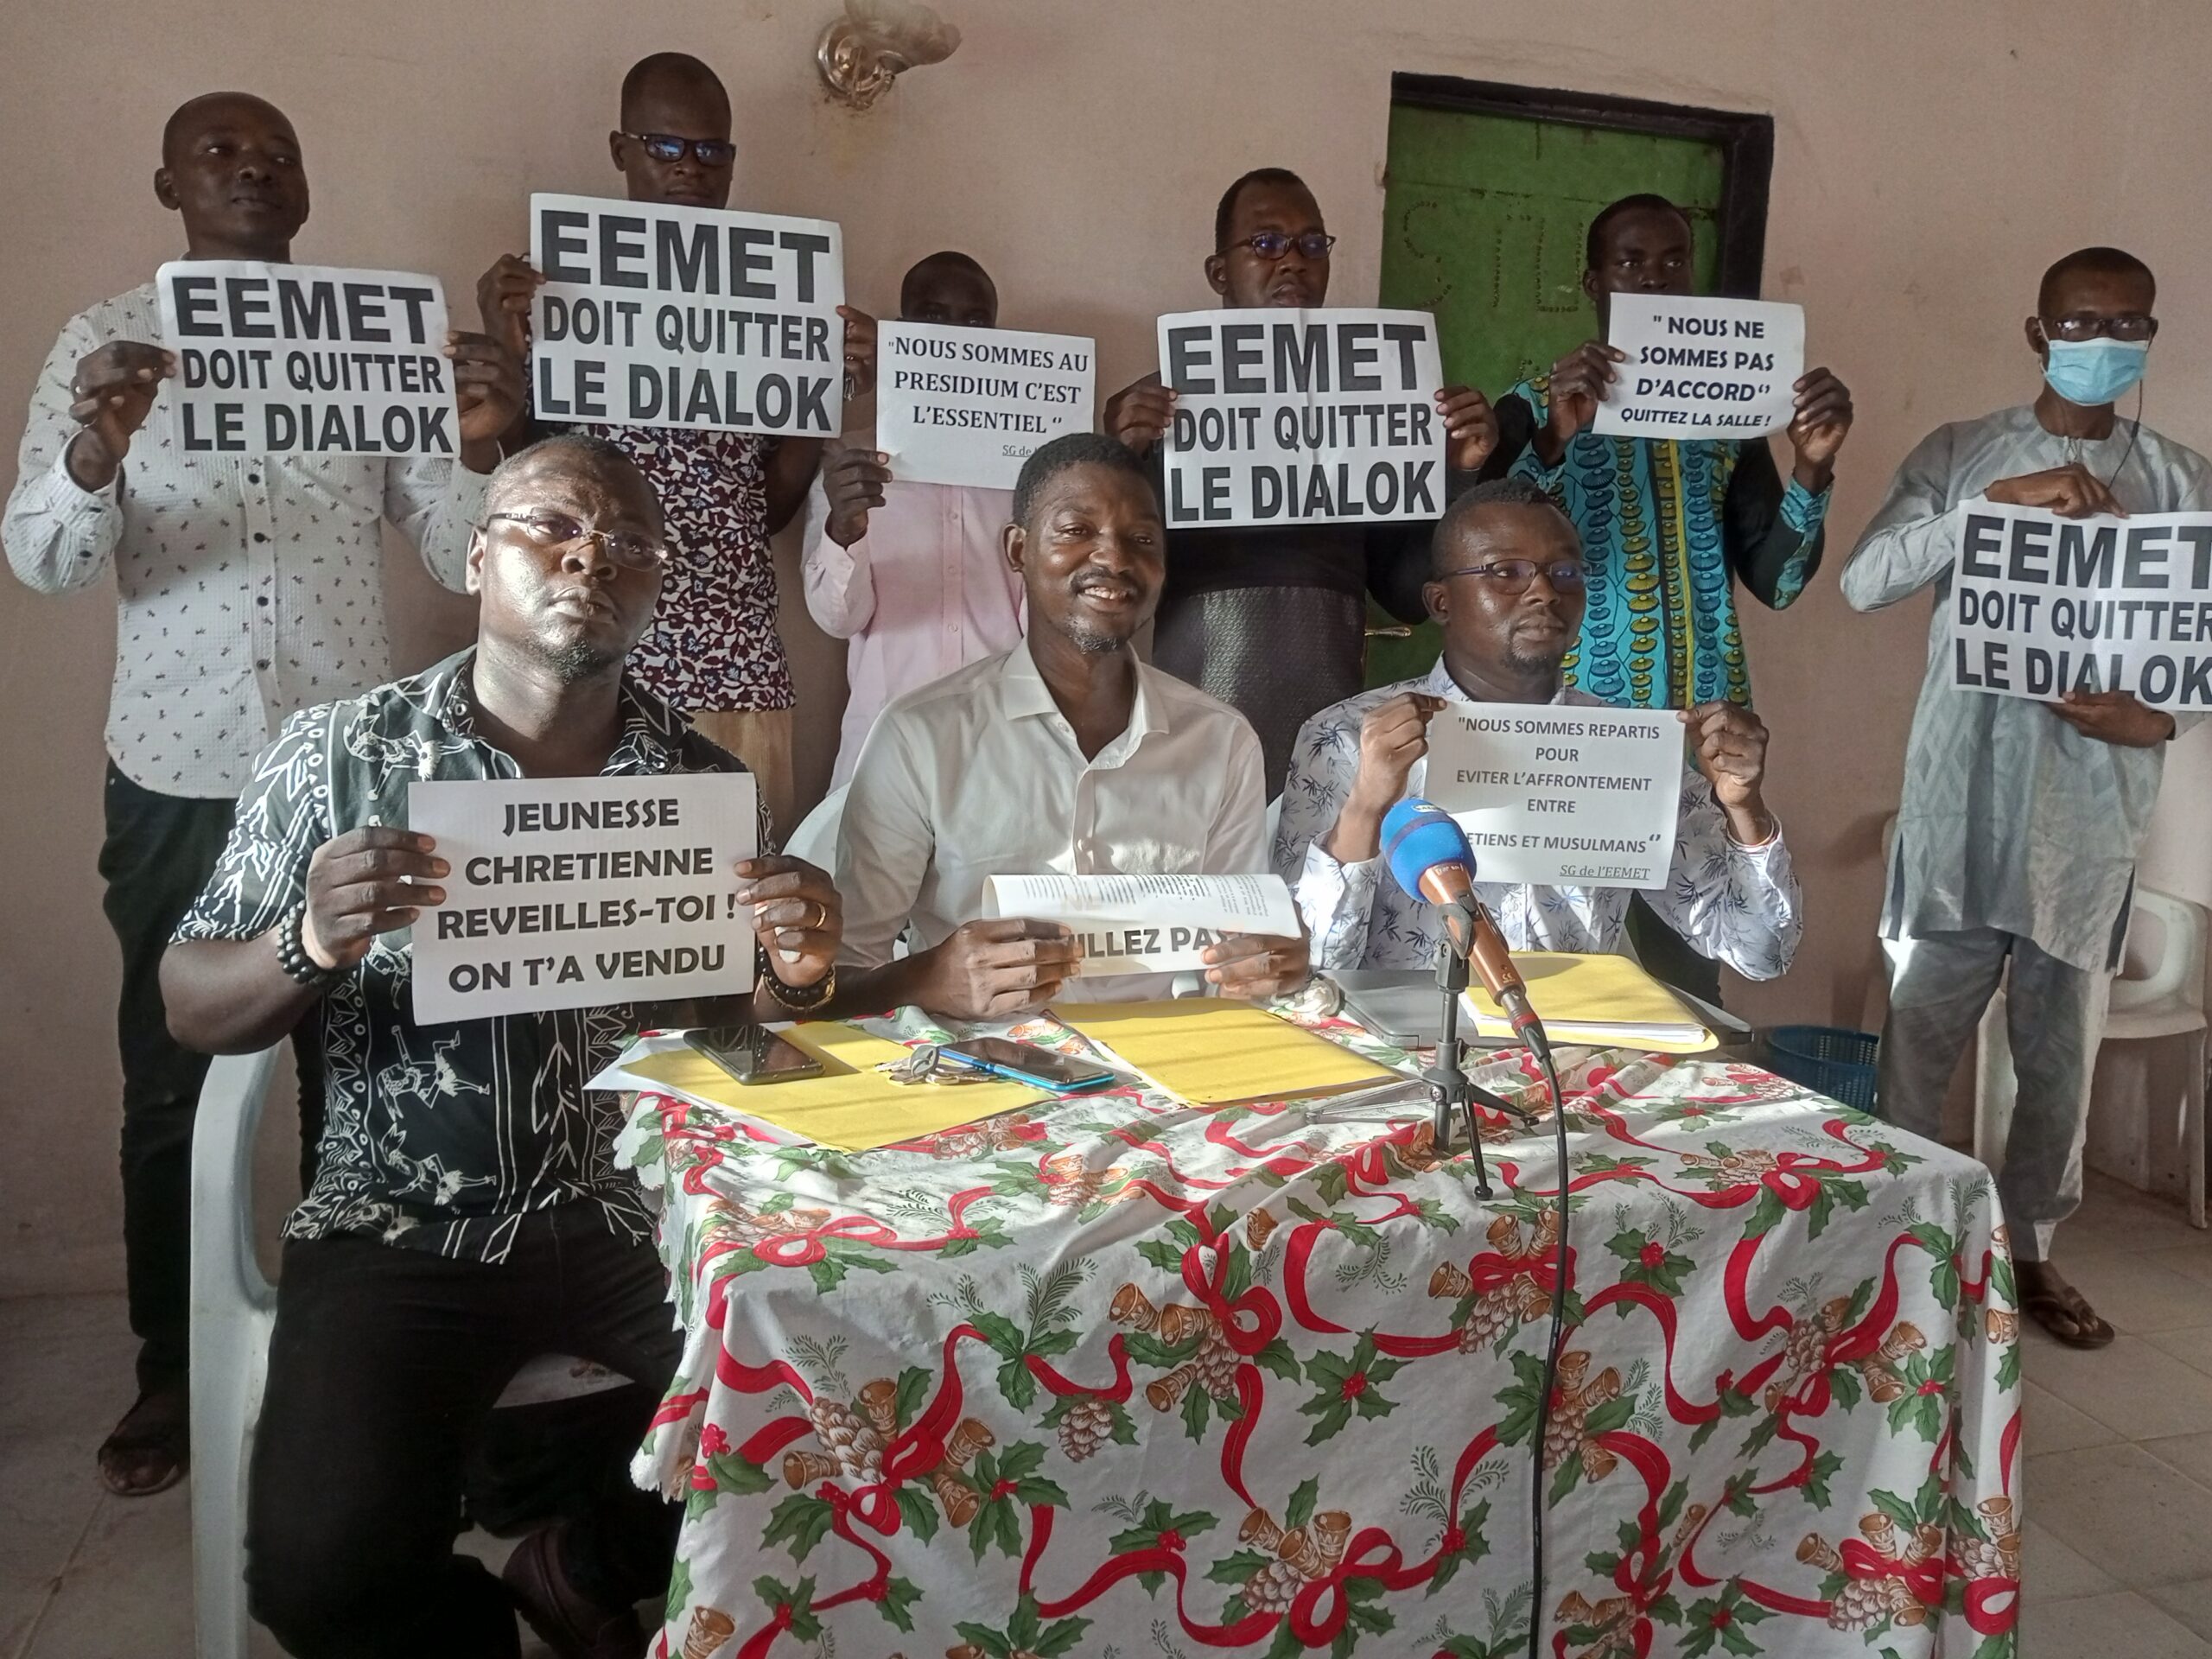 Tchad : un cadre de jeunes protestants désapprouve la participation de l’EEMET au dialogue national